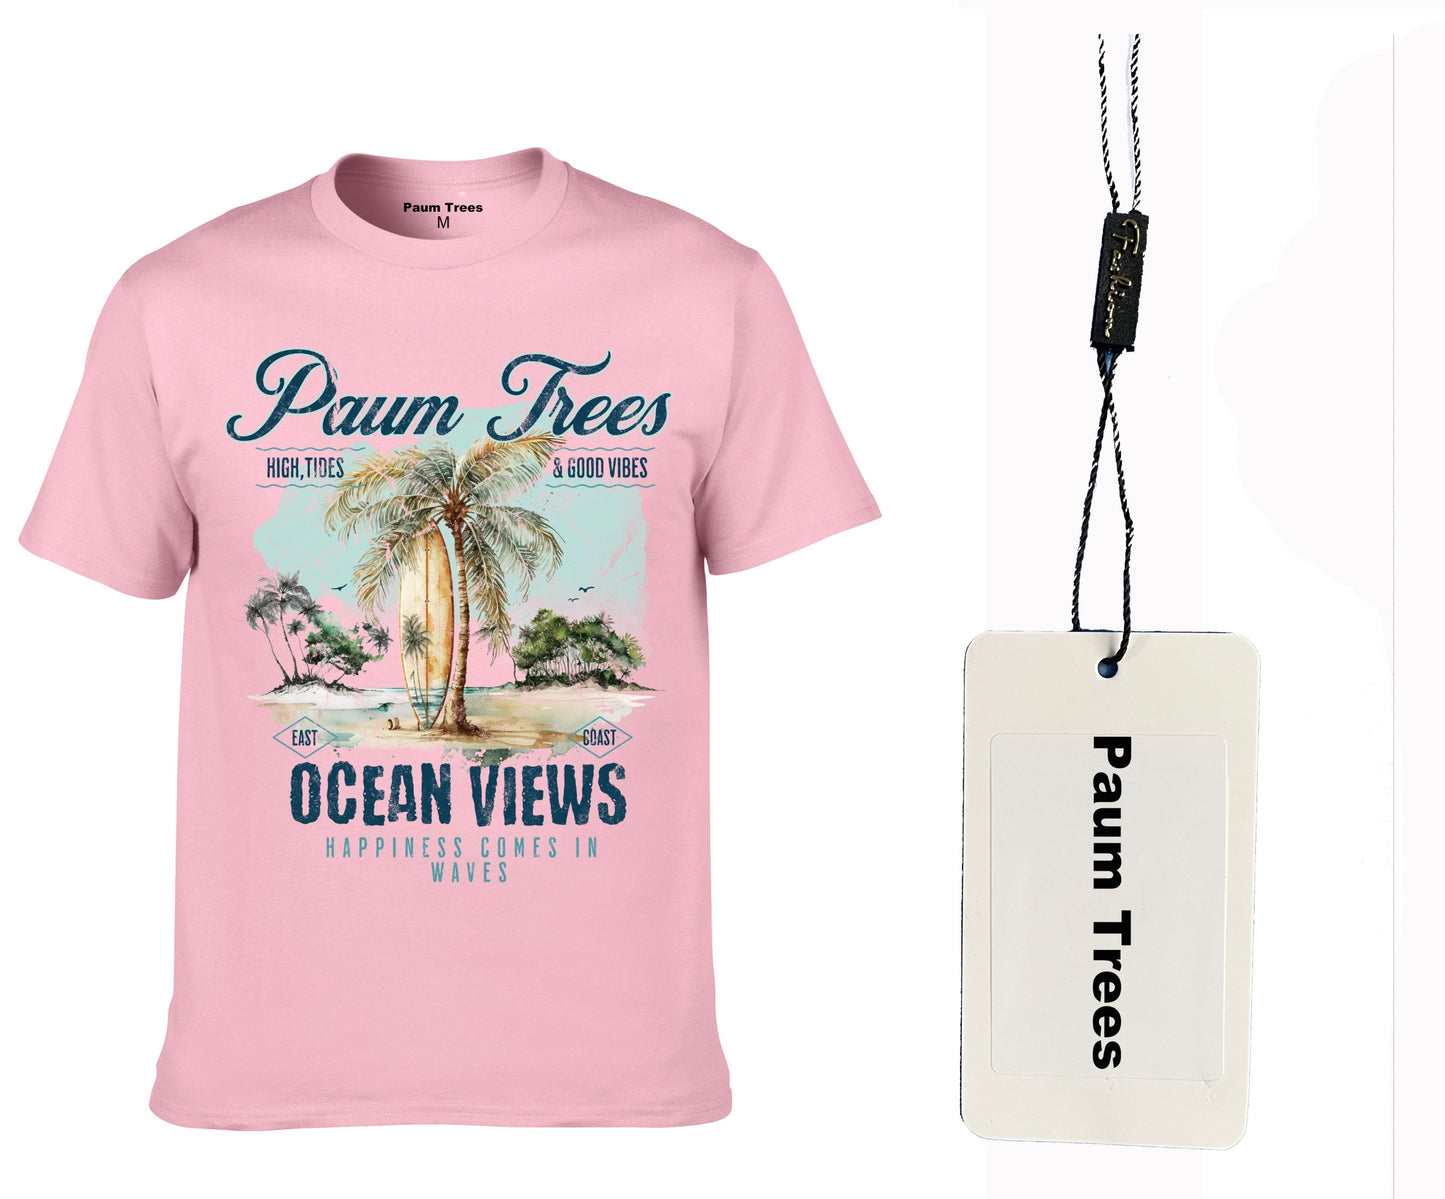 *NEW* Paumtrees "Ocean views" tee shirt